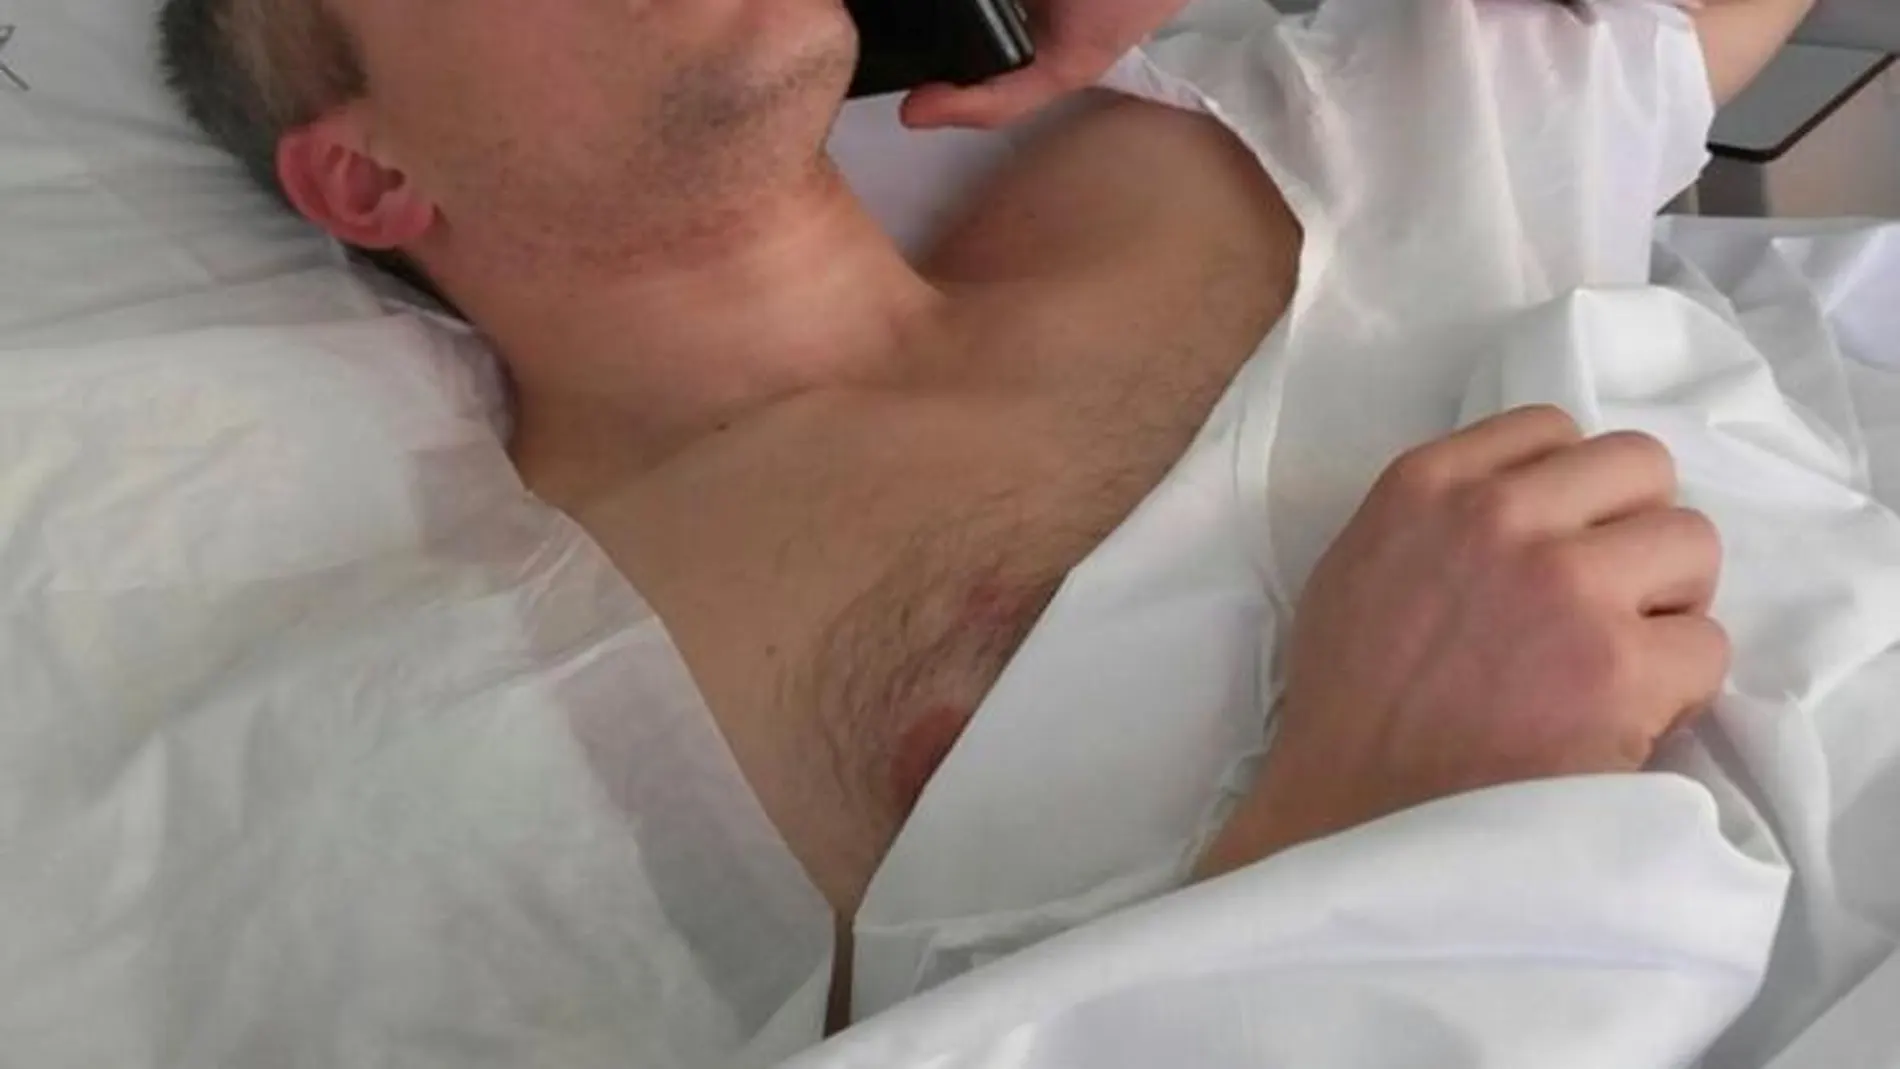 Christian Movio, de 36 años, se recupera de la intervención quirúrgica en el hospital de San Gerardo de Monza. Le extrajeron una bala del hombro